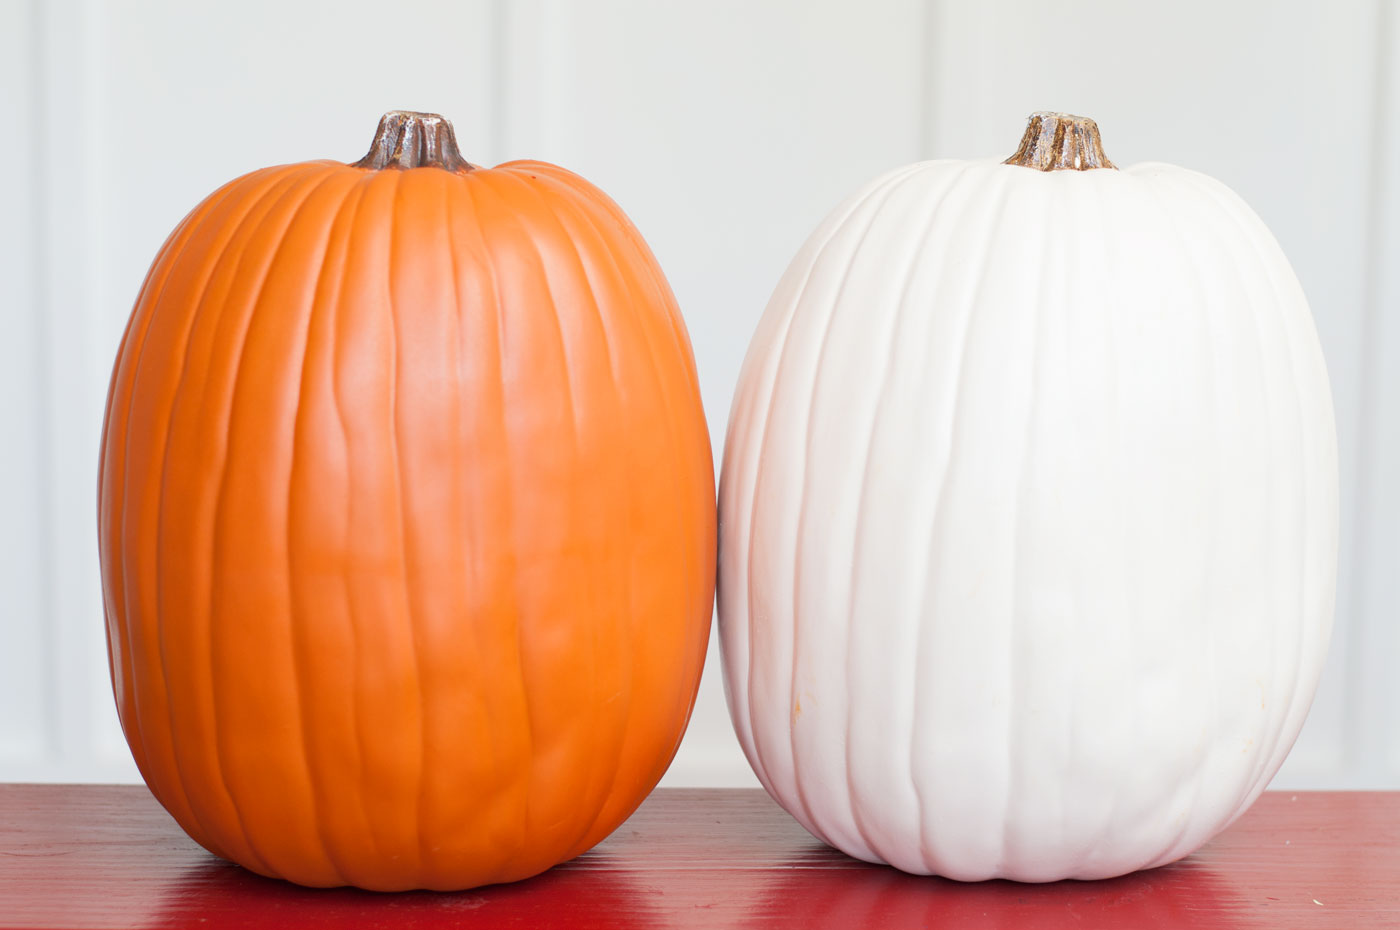 One faux orange pumpkin and one faux white pumpkin